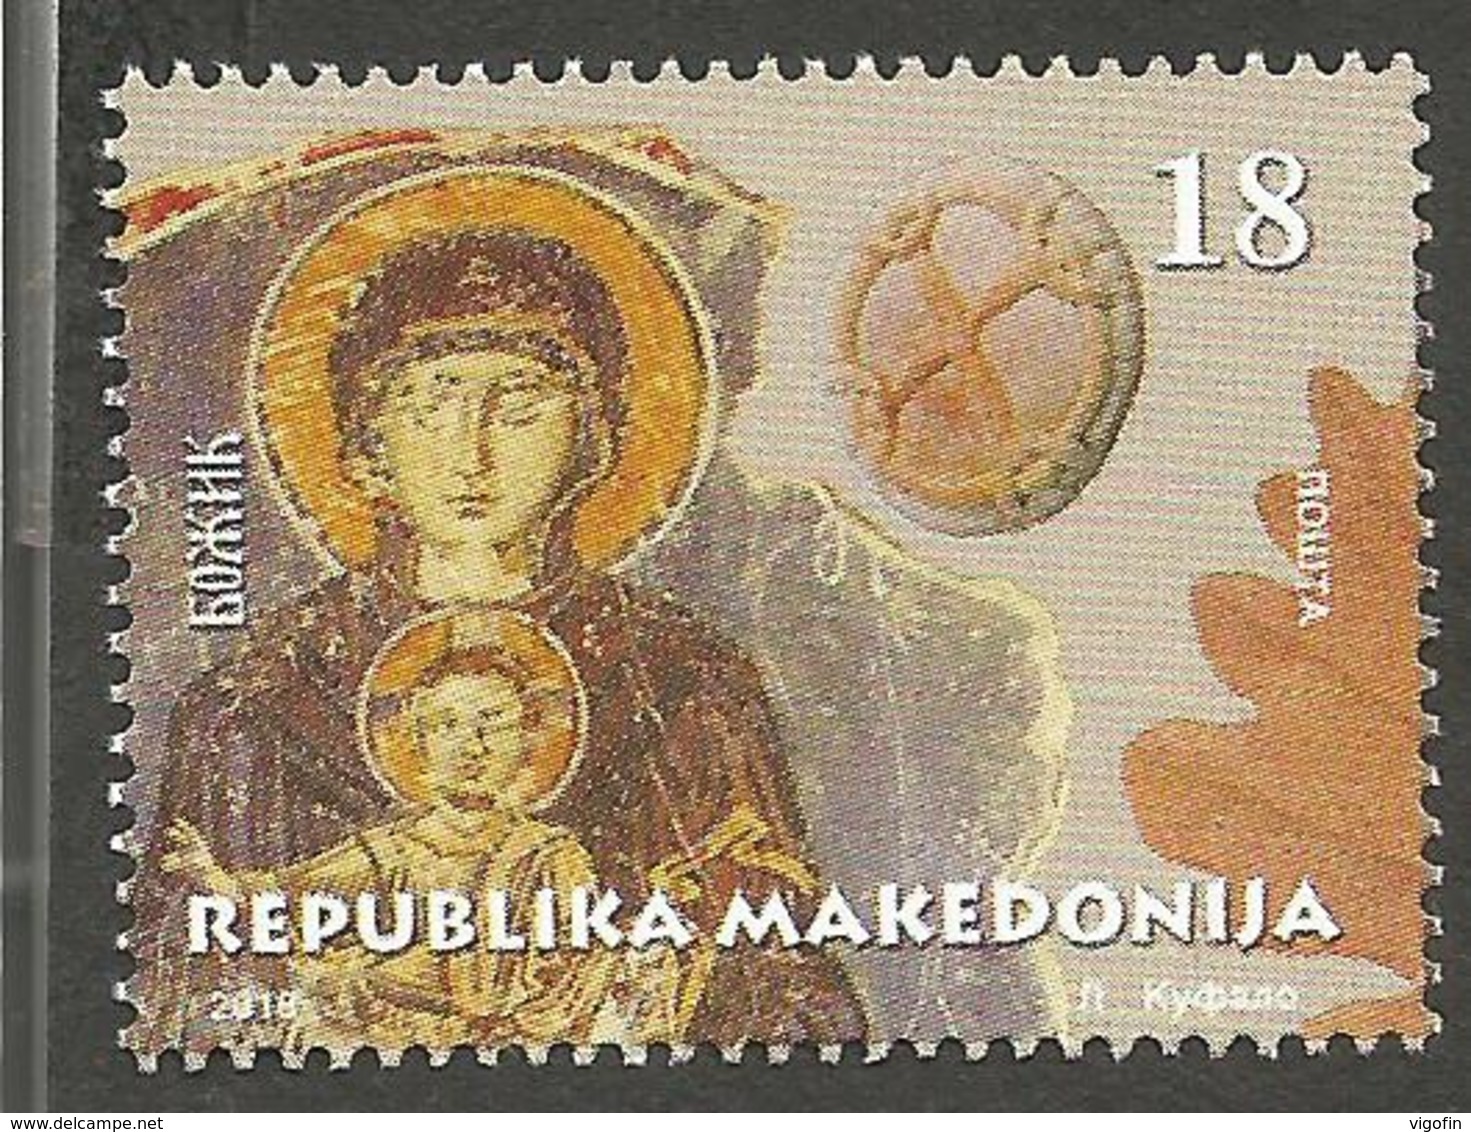 MK 2018-858 CHRISTMAS, NORD MACEDONIA, 1 X 1v, MNH - Macédoine Du Nord